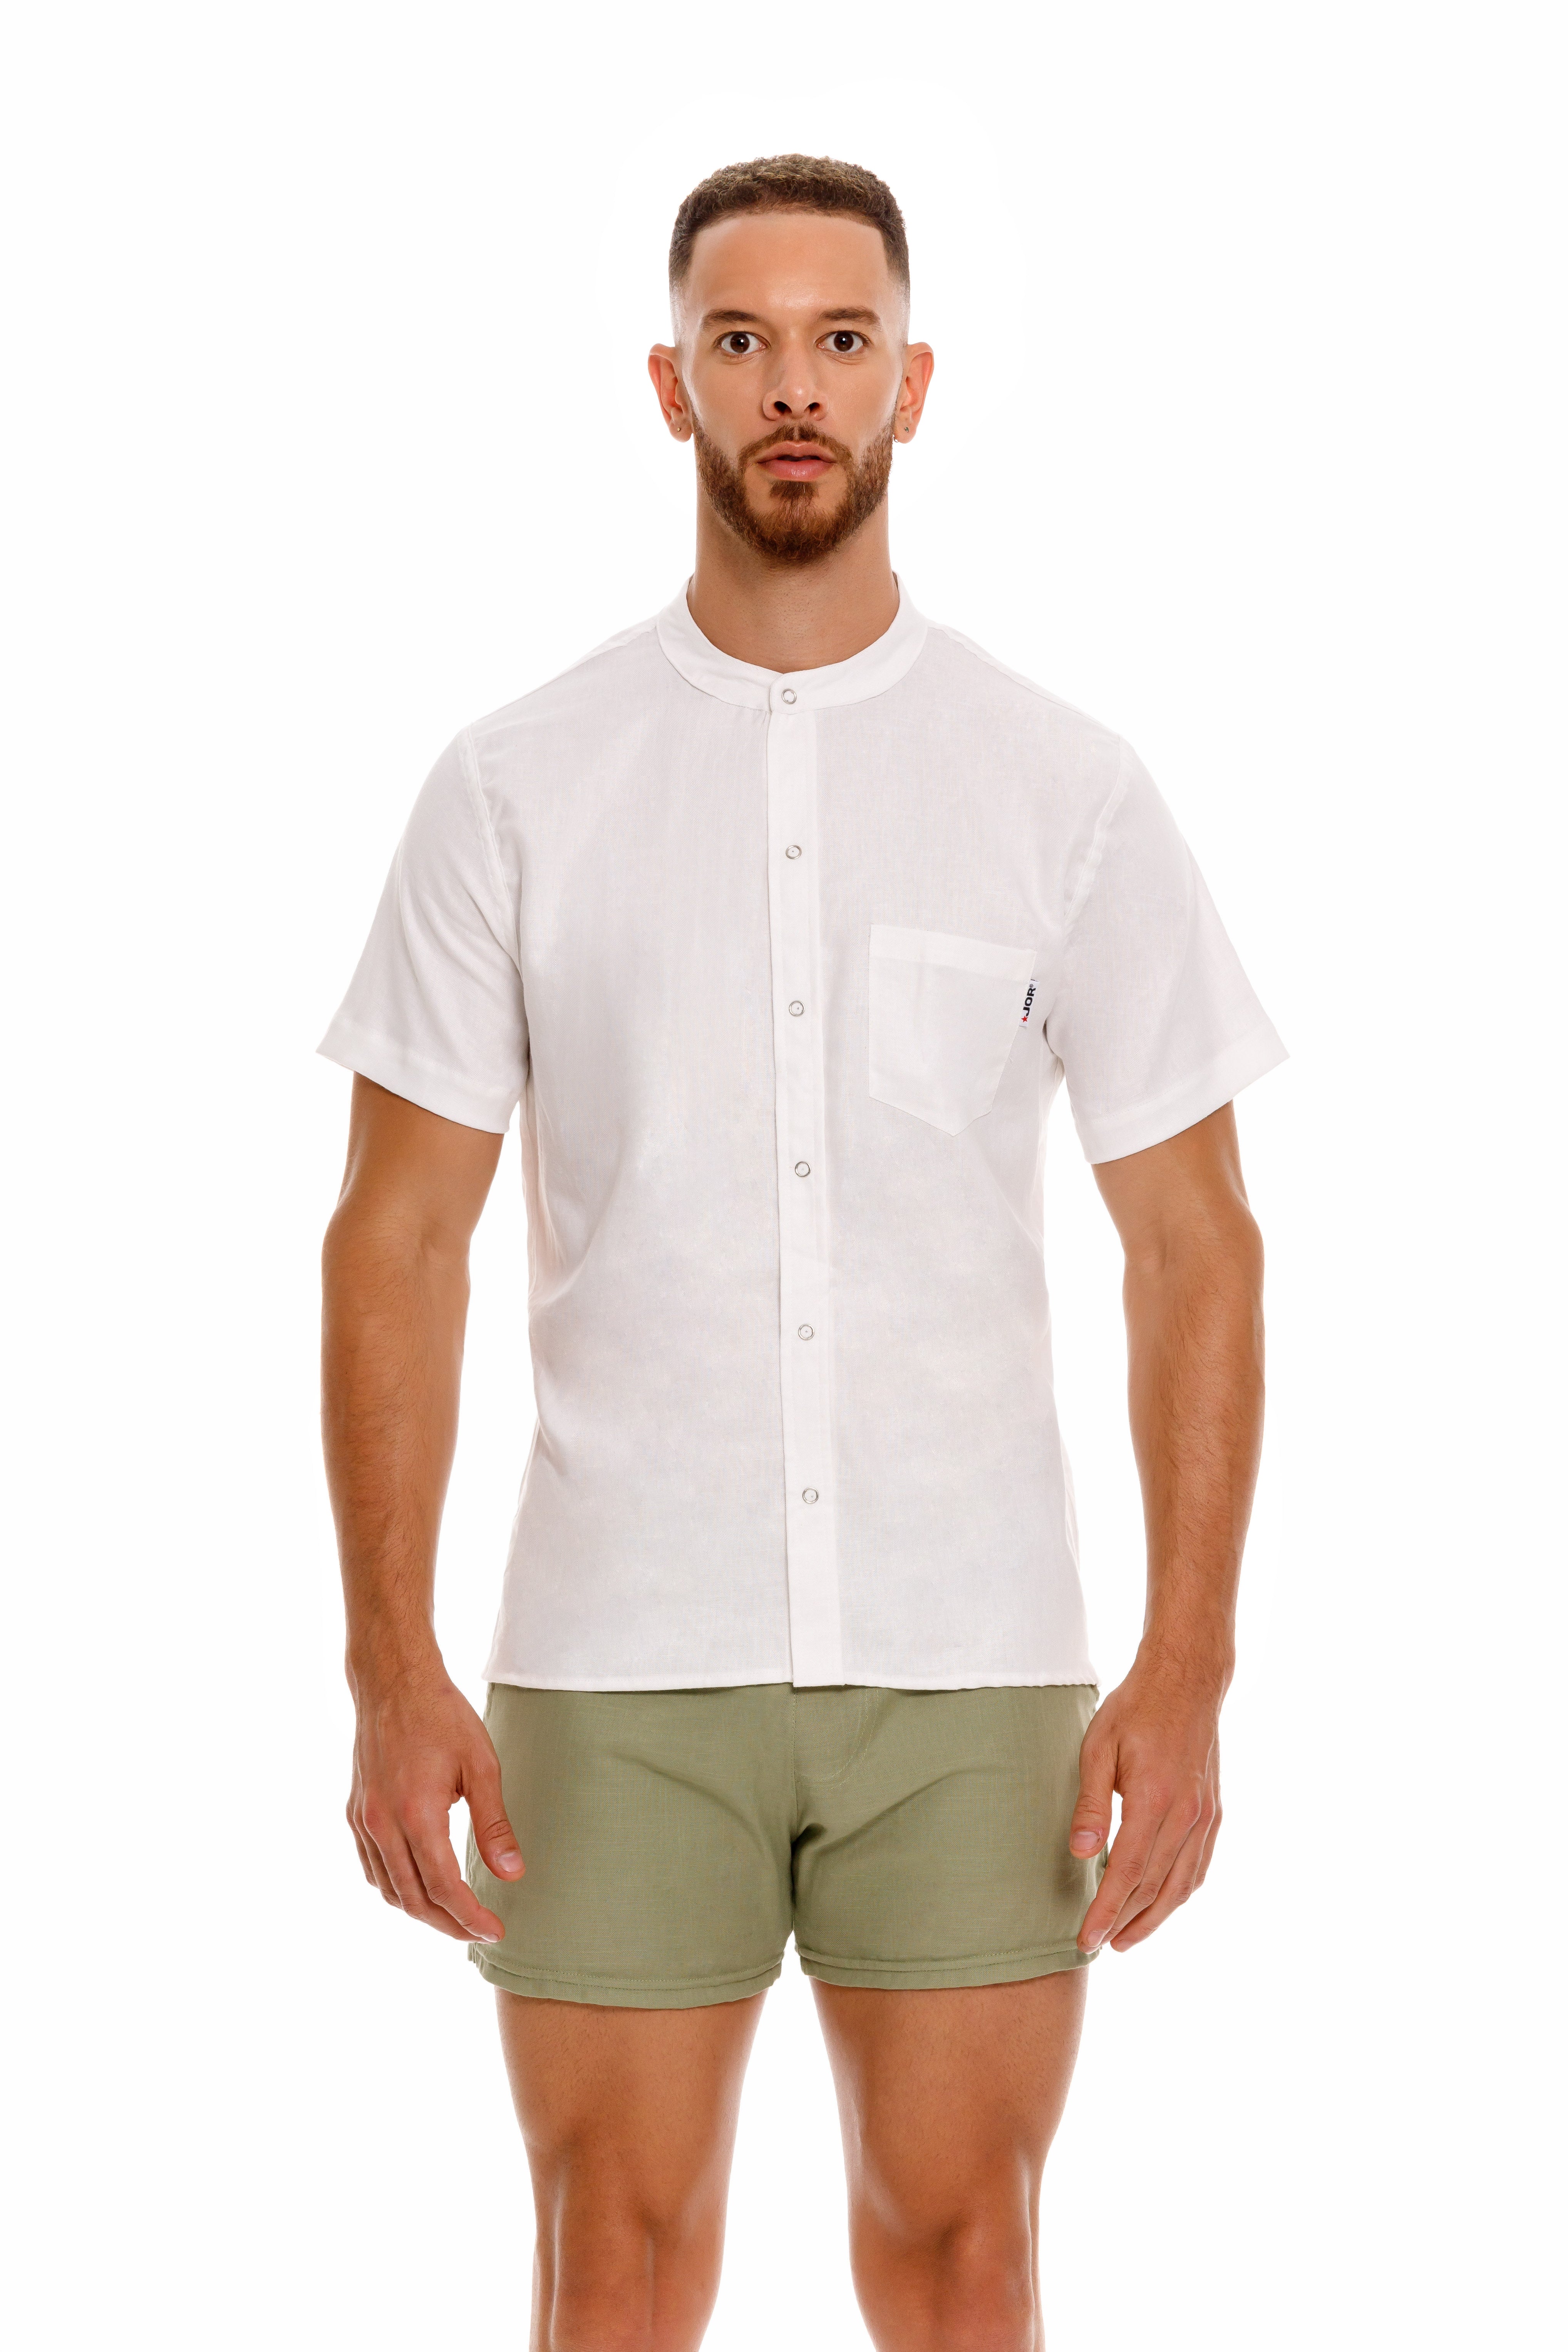 JOR Qatar short sleeve linen shirt white